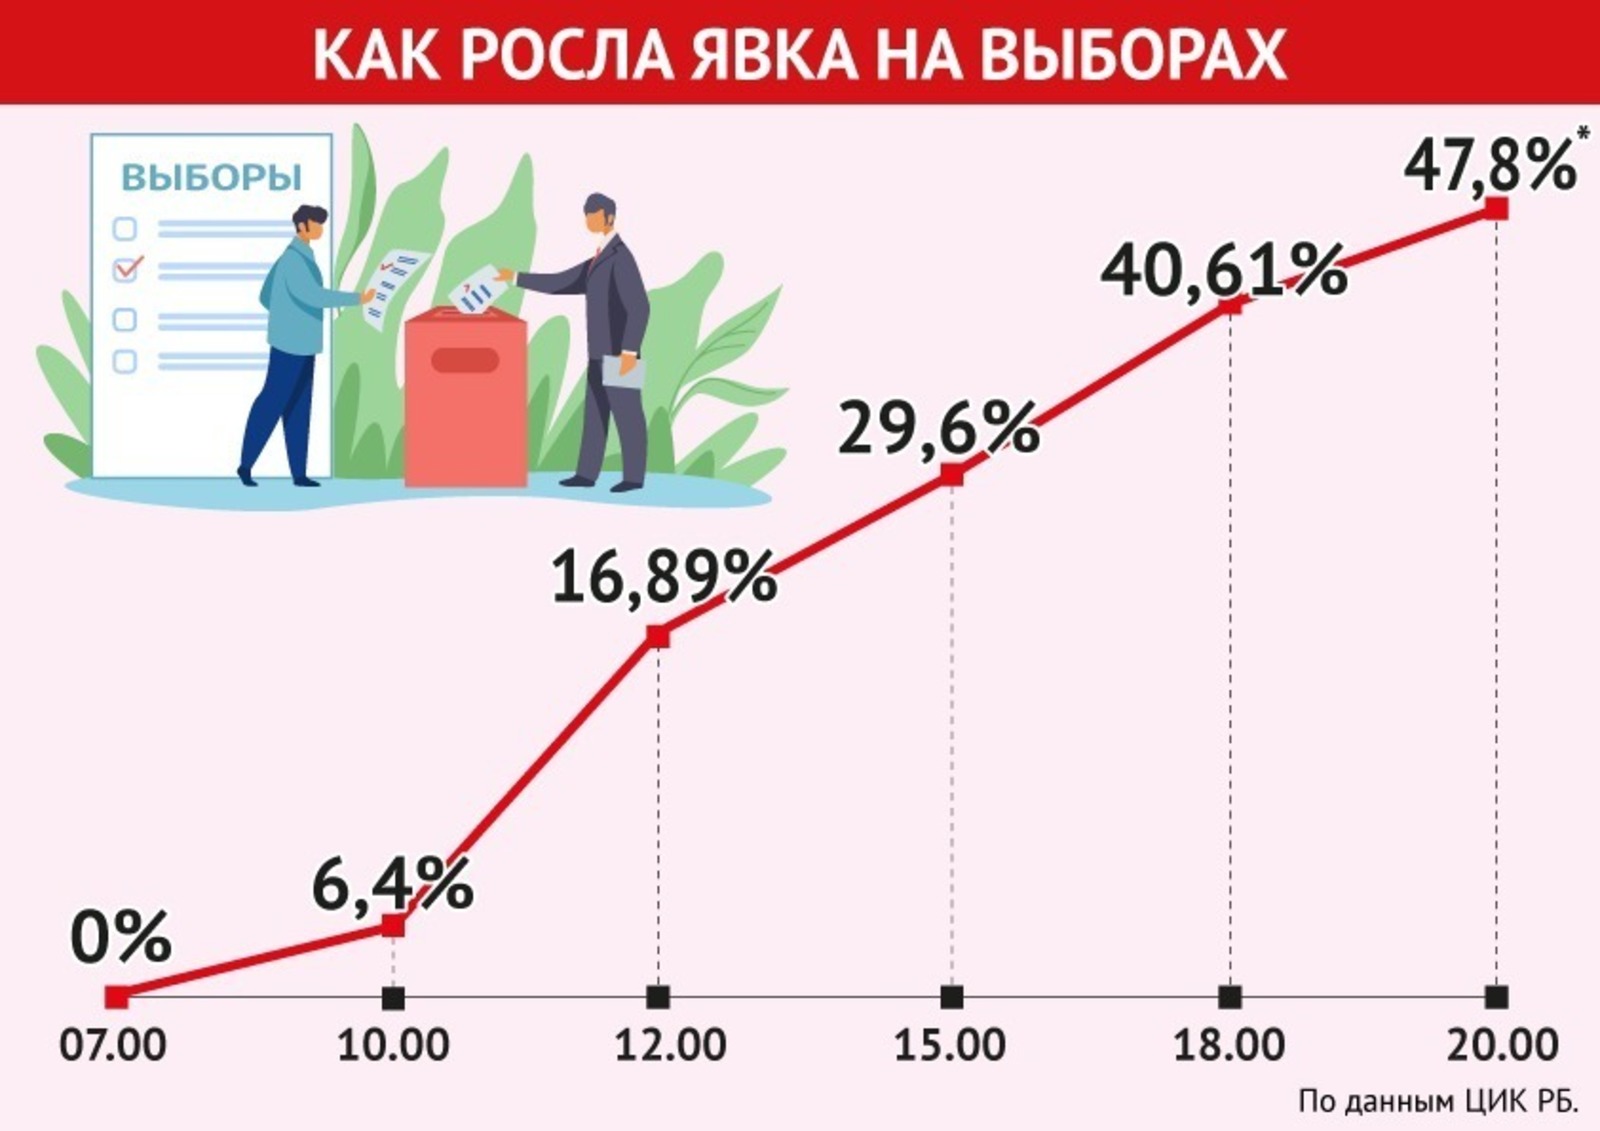 В Башкирии на голосование пришли 47,8% избирателей по данным на 20.00